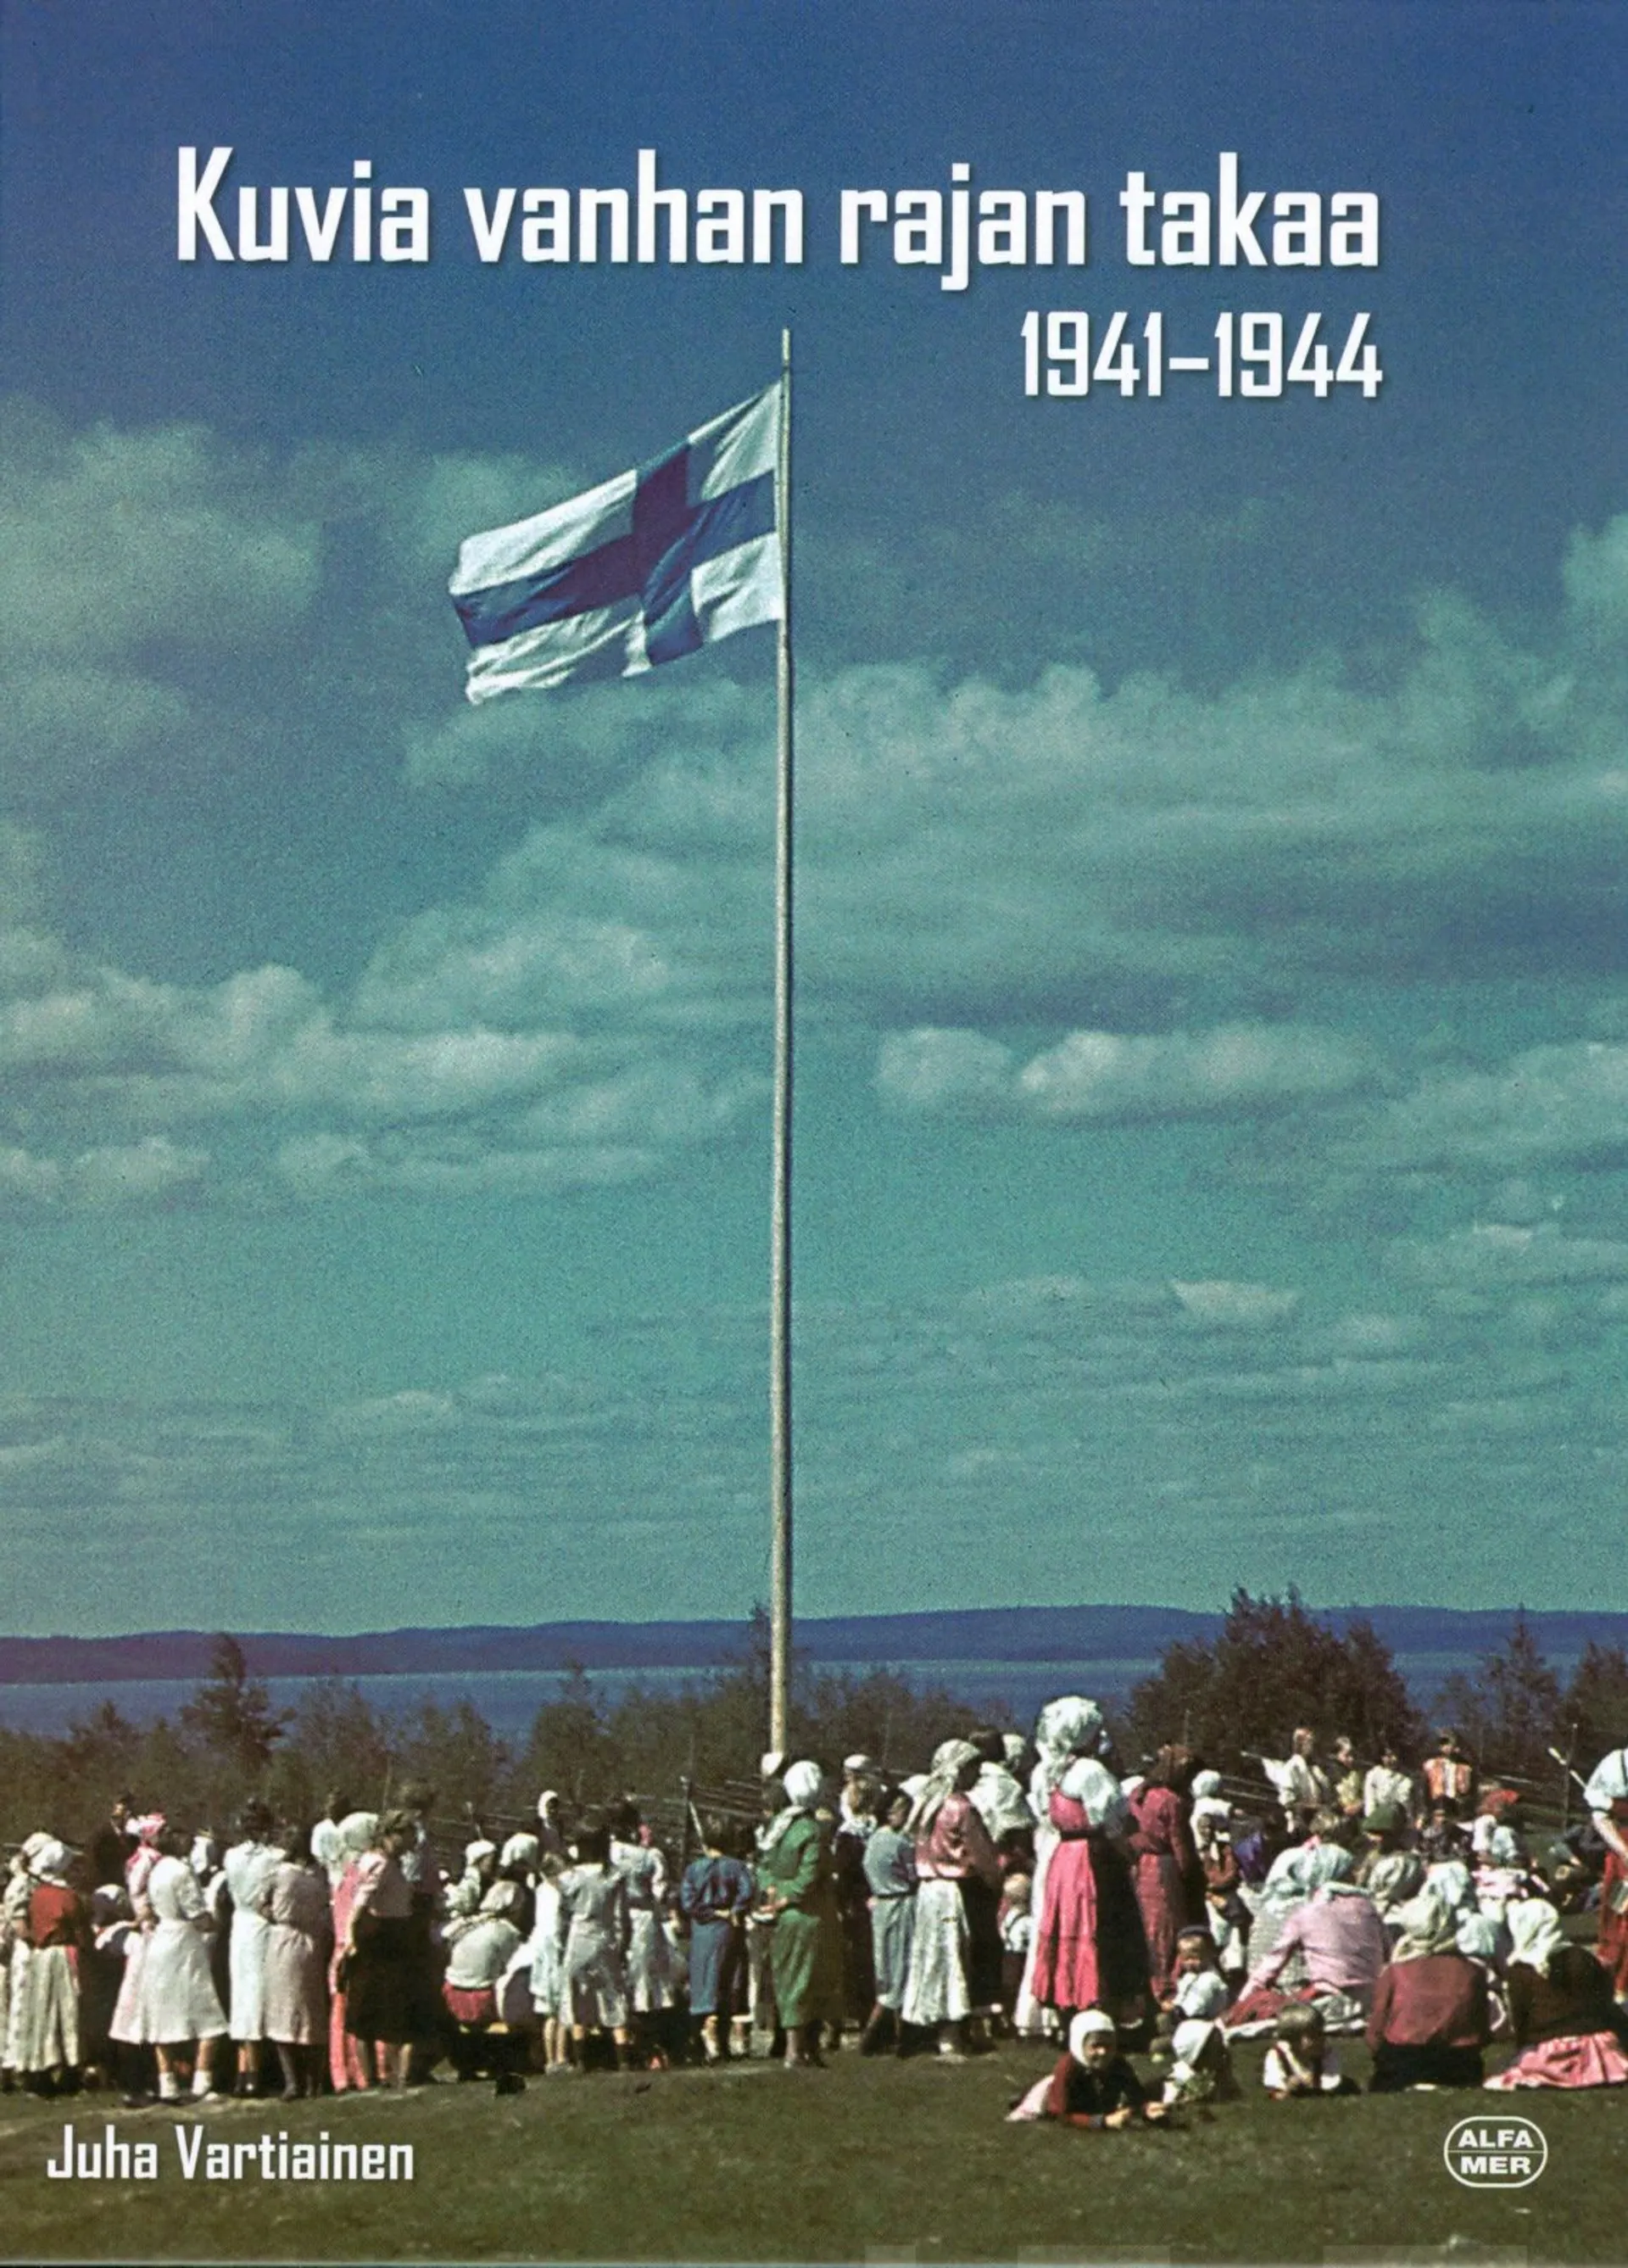 Vartiainen, Kuvia vanhan rajan takaa 1941-1944